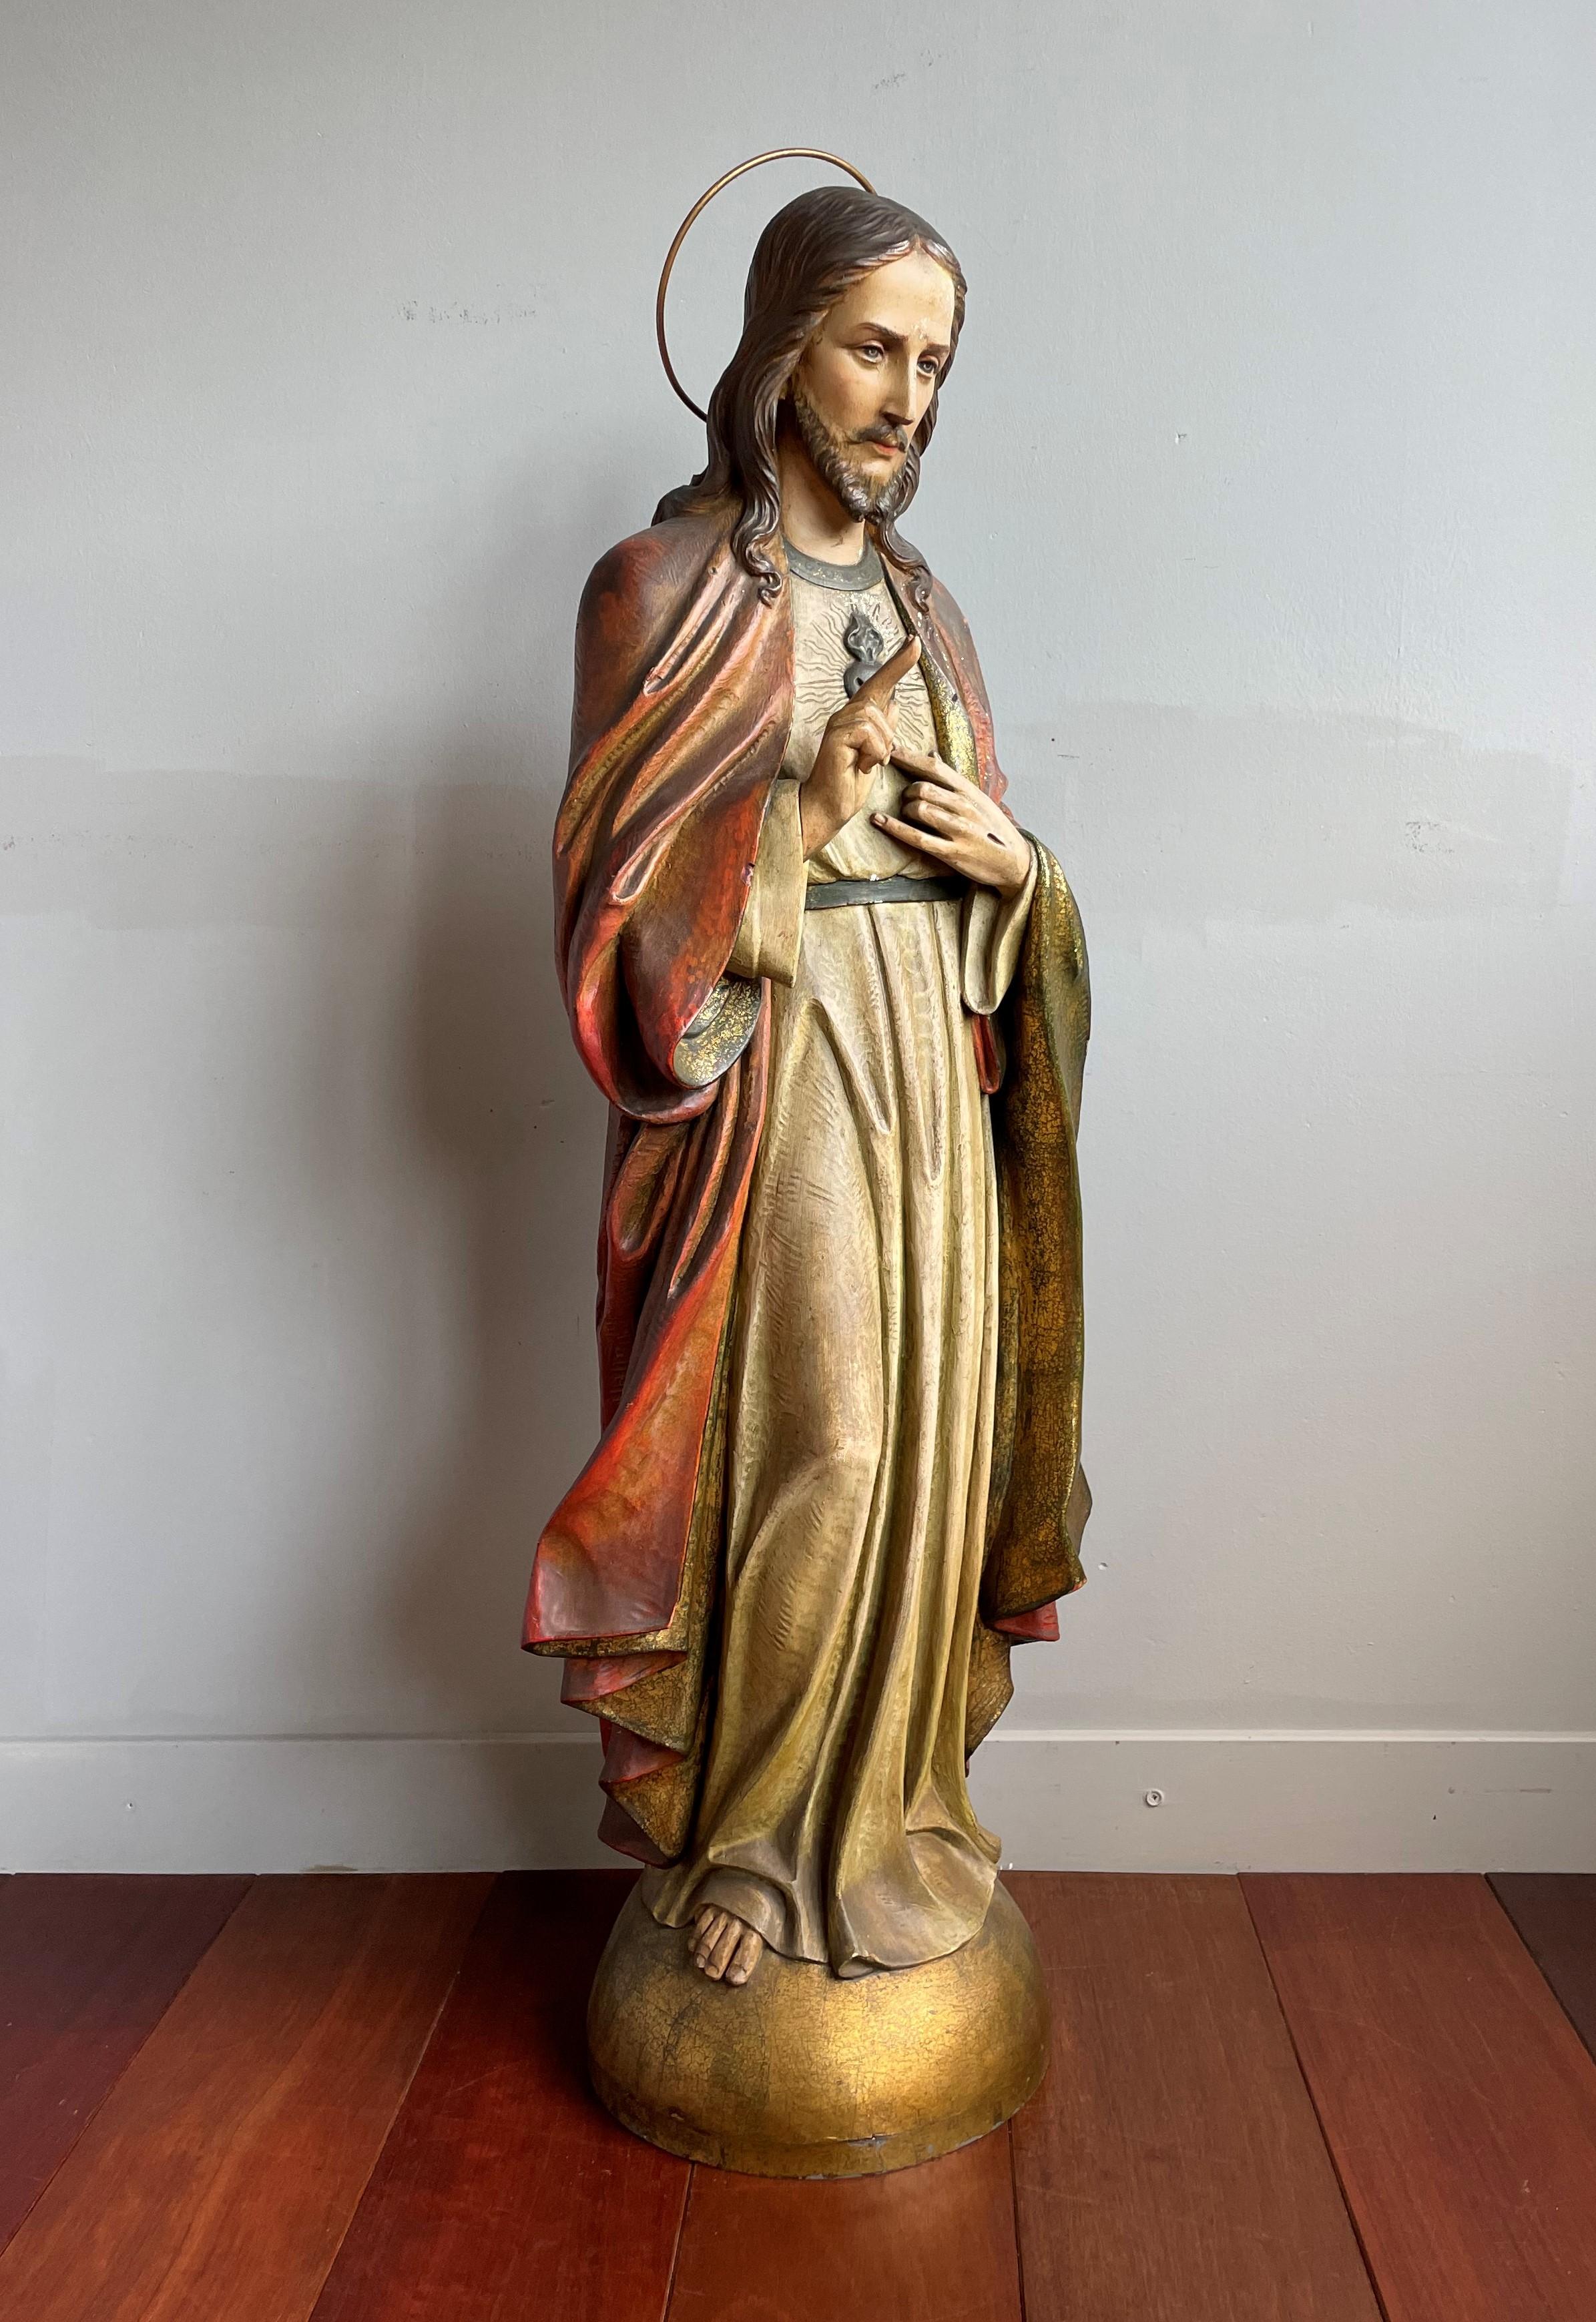 Völlig originale, vollständig handgefertigte antike Herz-Jesu-Skulptur auf einem Zinksockel. Über 3,5 Meter groß.

Als wäre es nicht schon besonders genug, eine antike Christusskulptur in einer Kirche zu finden, fanden wir auch noch eine mit den